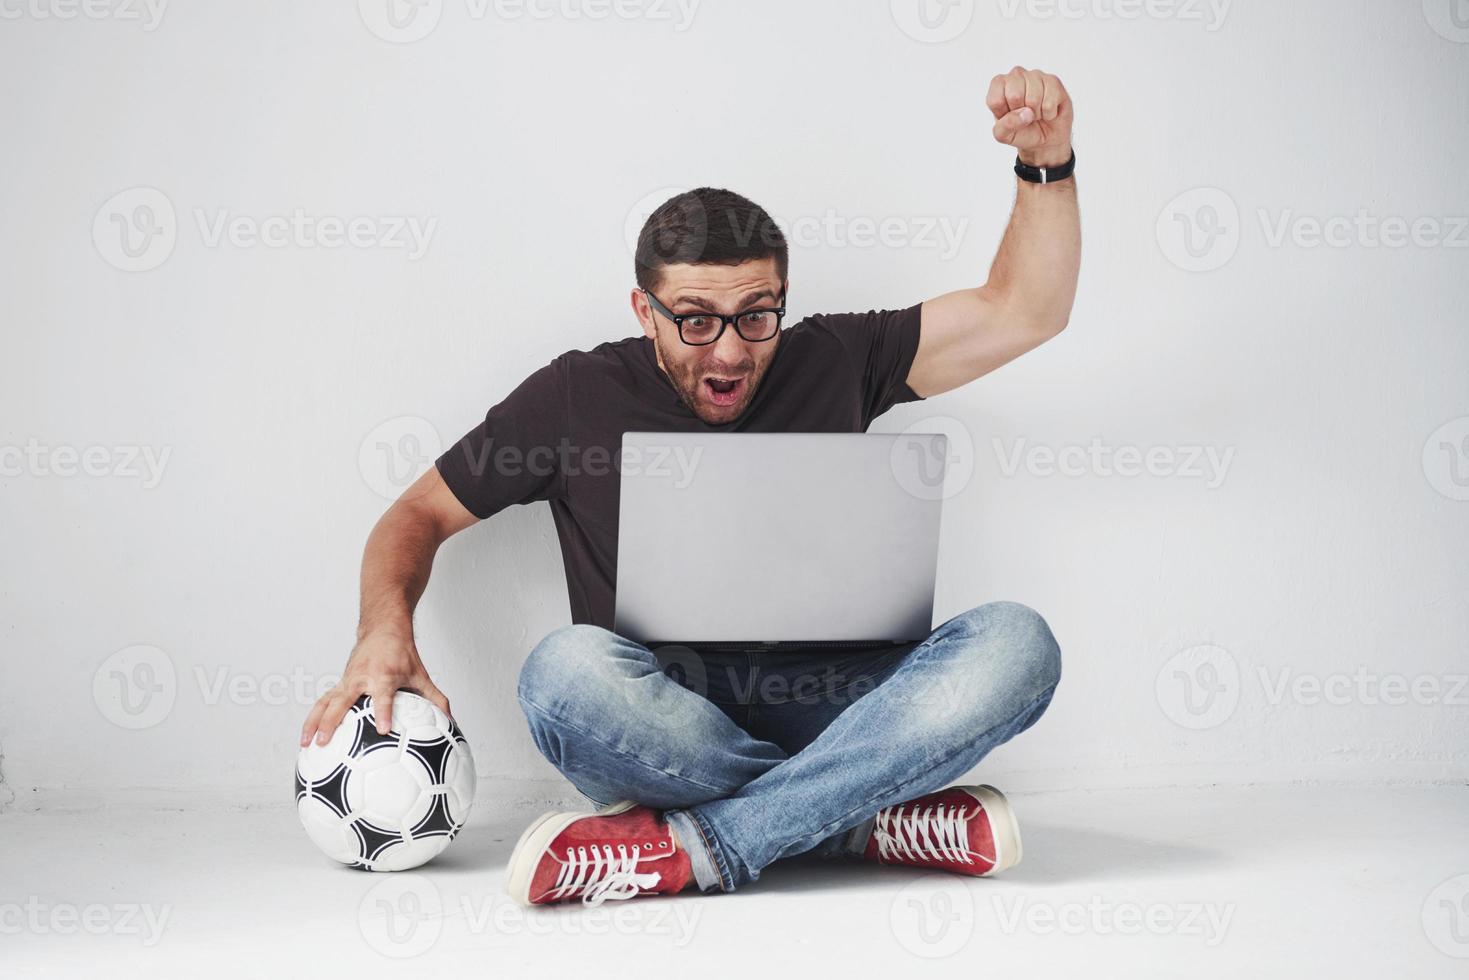 fã de futebol animado com uma bola de futebol isolada no fundo branco. ele se senta no chão e assiste os resultados do jogo e os melhores momentos da partida no laptop. foto